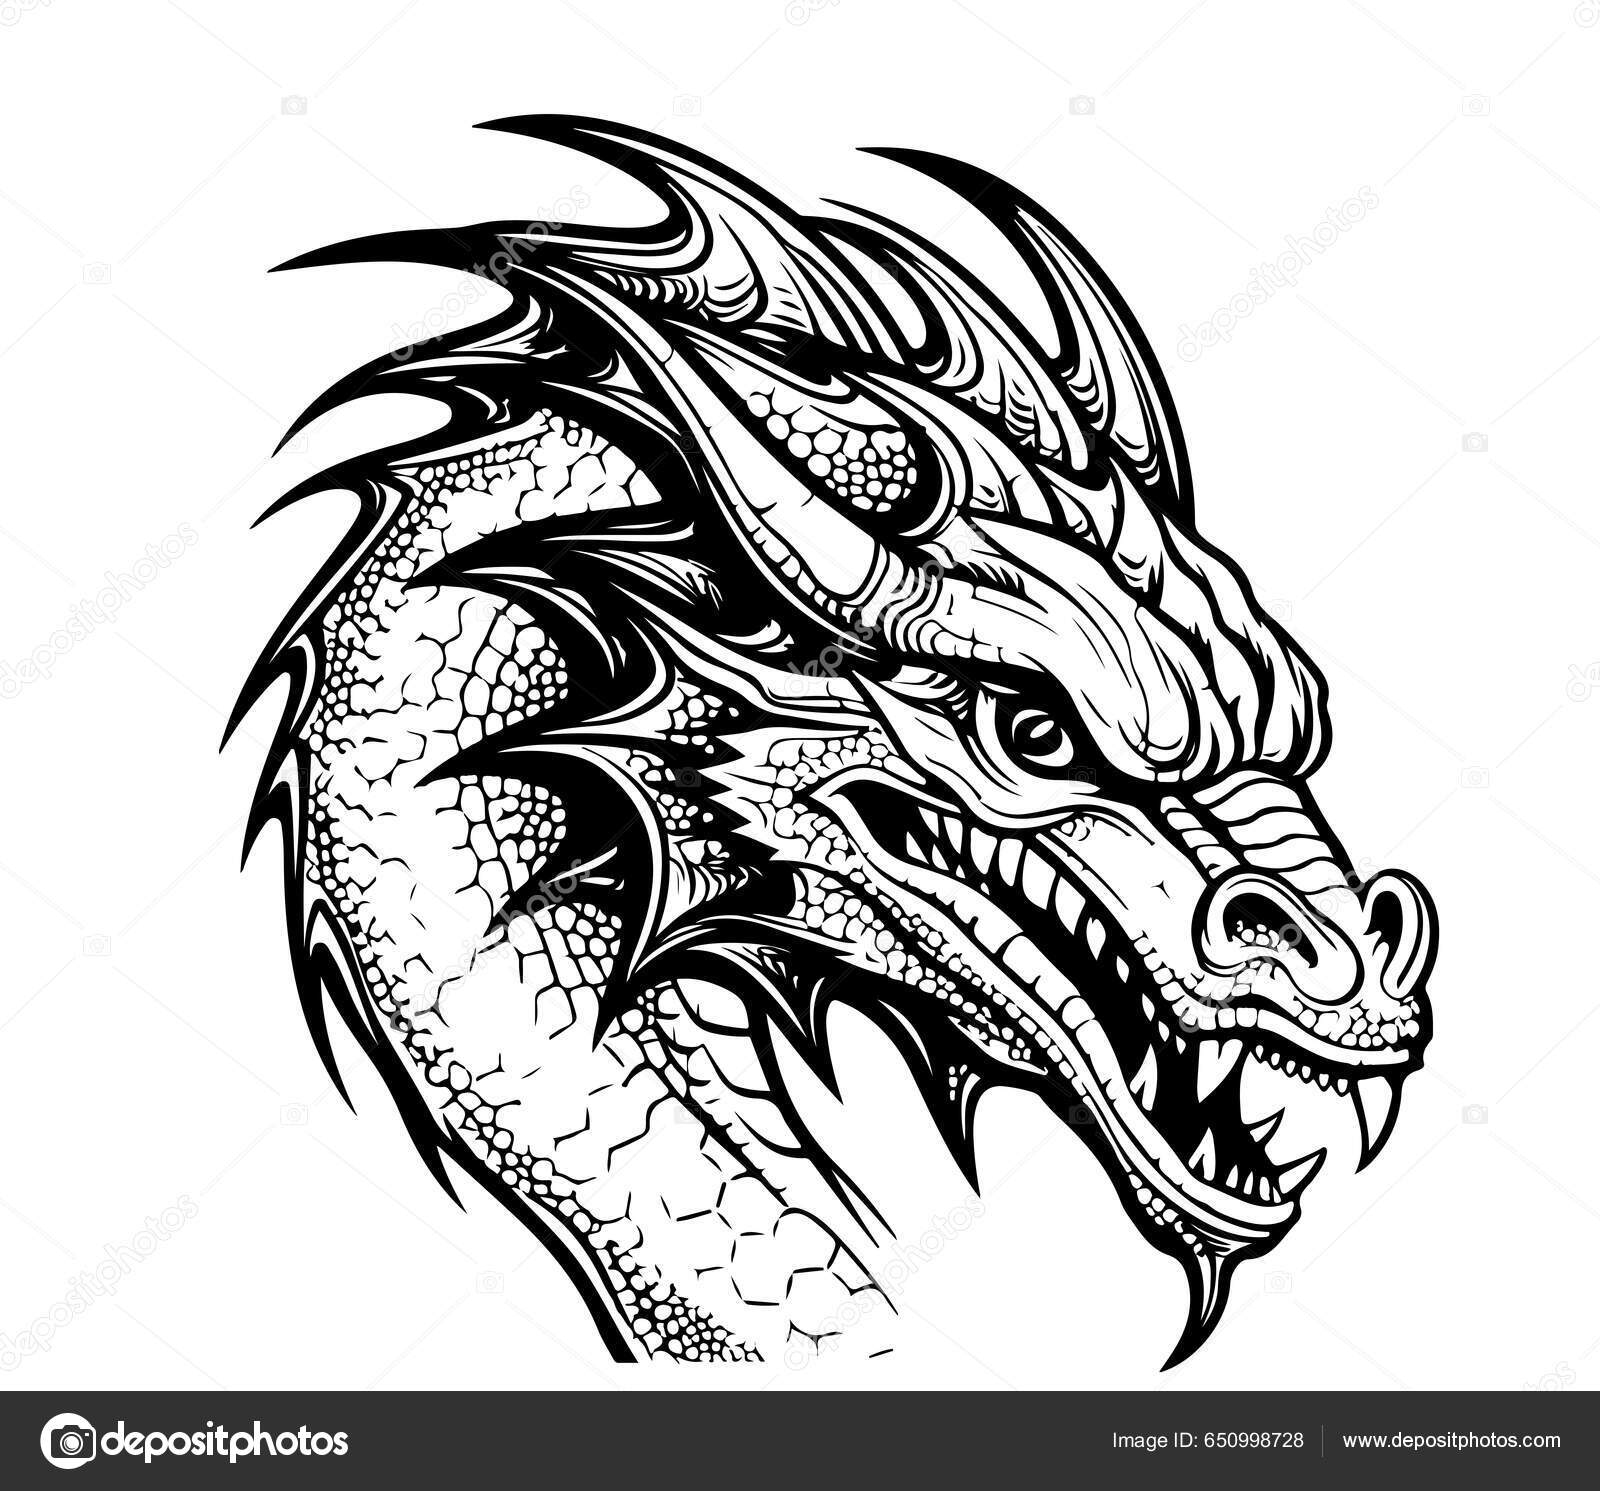 https://st5.depositphotos.com/63356574/65099/v/1600/depositphotos_650998728-stock-illustration-face-fantasy-dragon-sketch-illustration.jpg